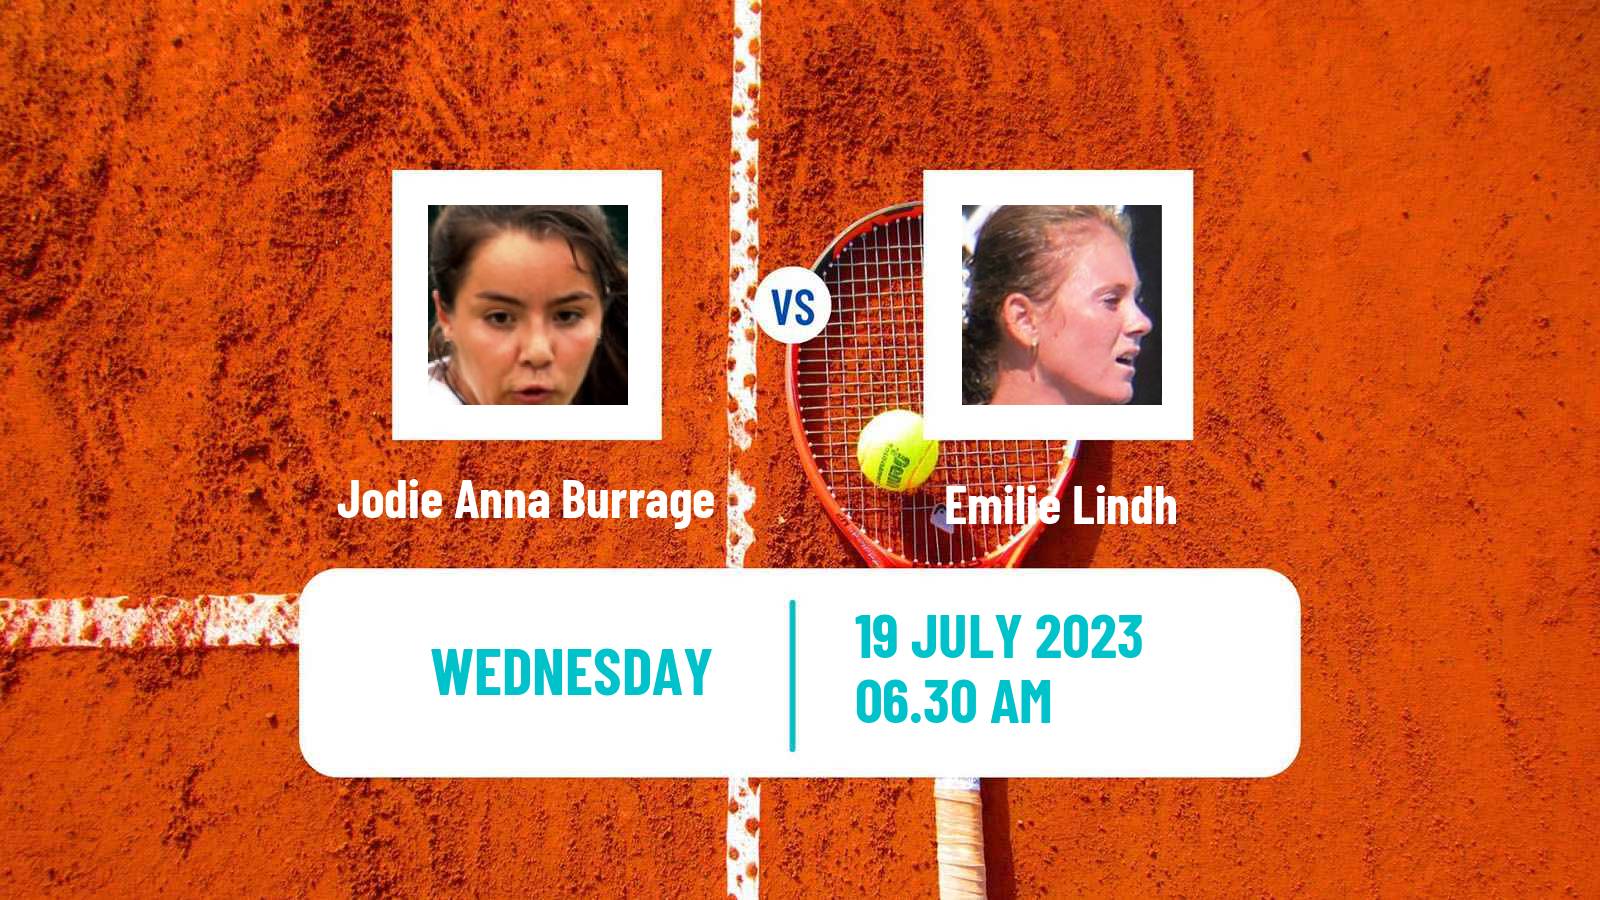 Tennis ITF W100 Vitoria Gasteiz Women 2023 Jodie Anna Burrage - Emilie Lindh